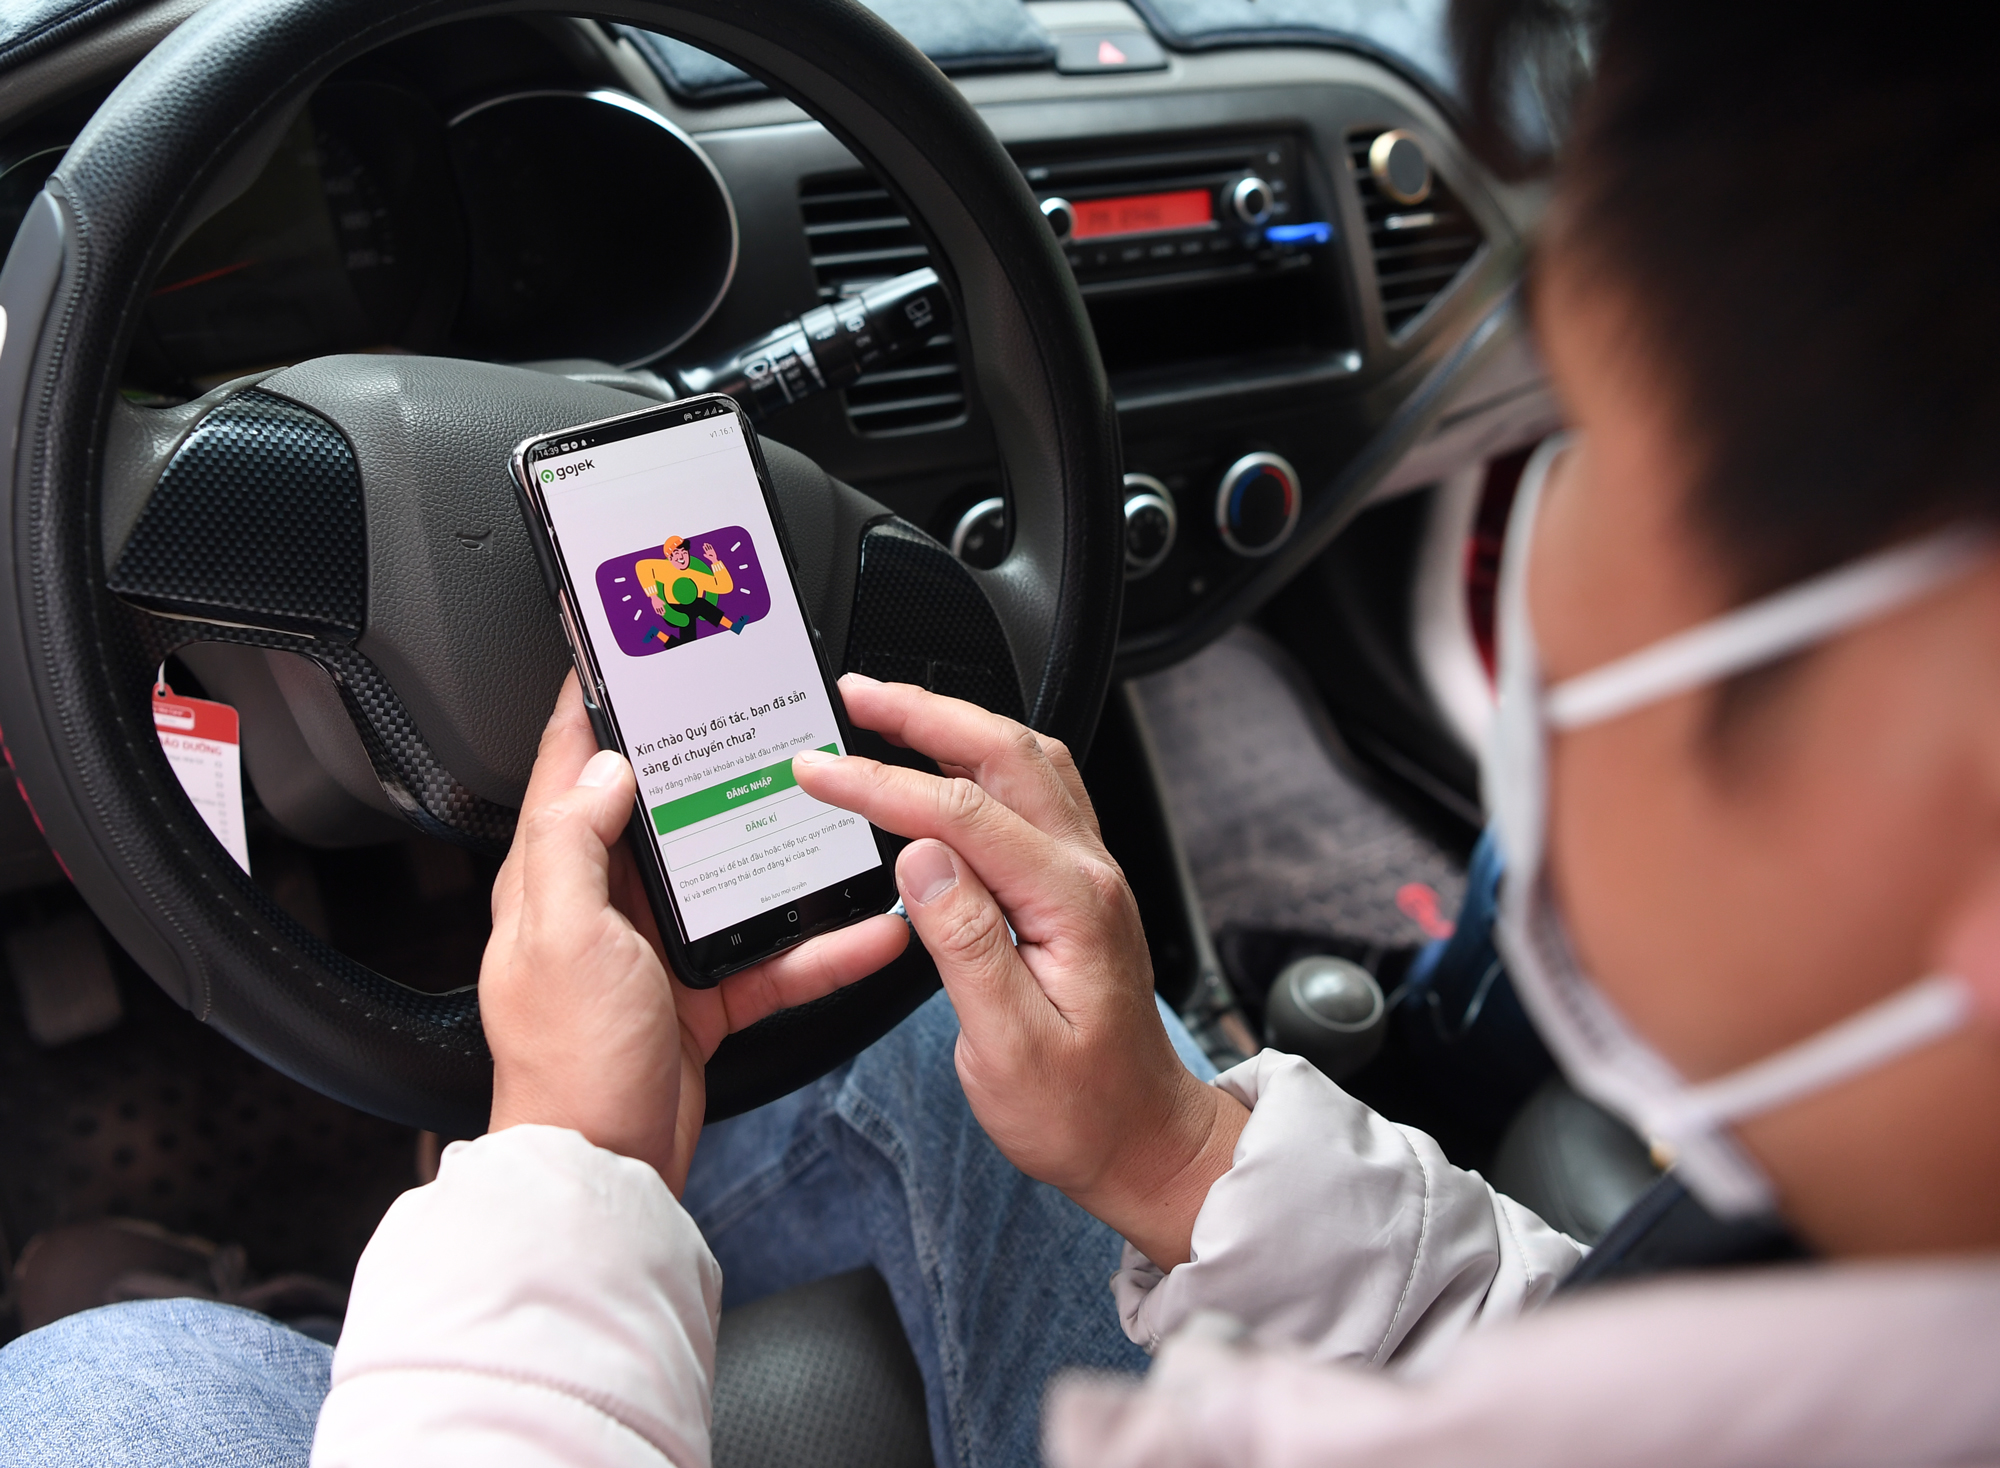 Gojek chính thức triển khai dịch vụ gọi xe ô tô công nghệ GoCar tại Hà Nội, trang bị đồng bộ màn chắn và máy lọc không khí trên xe